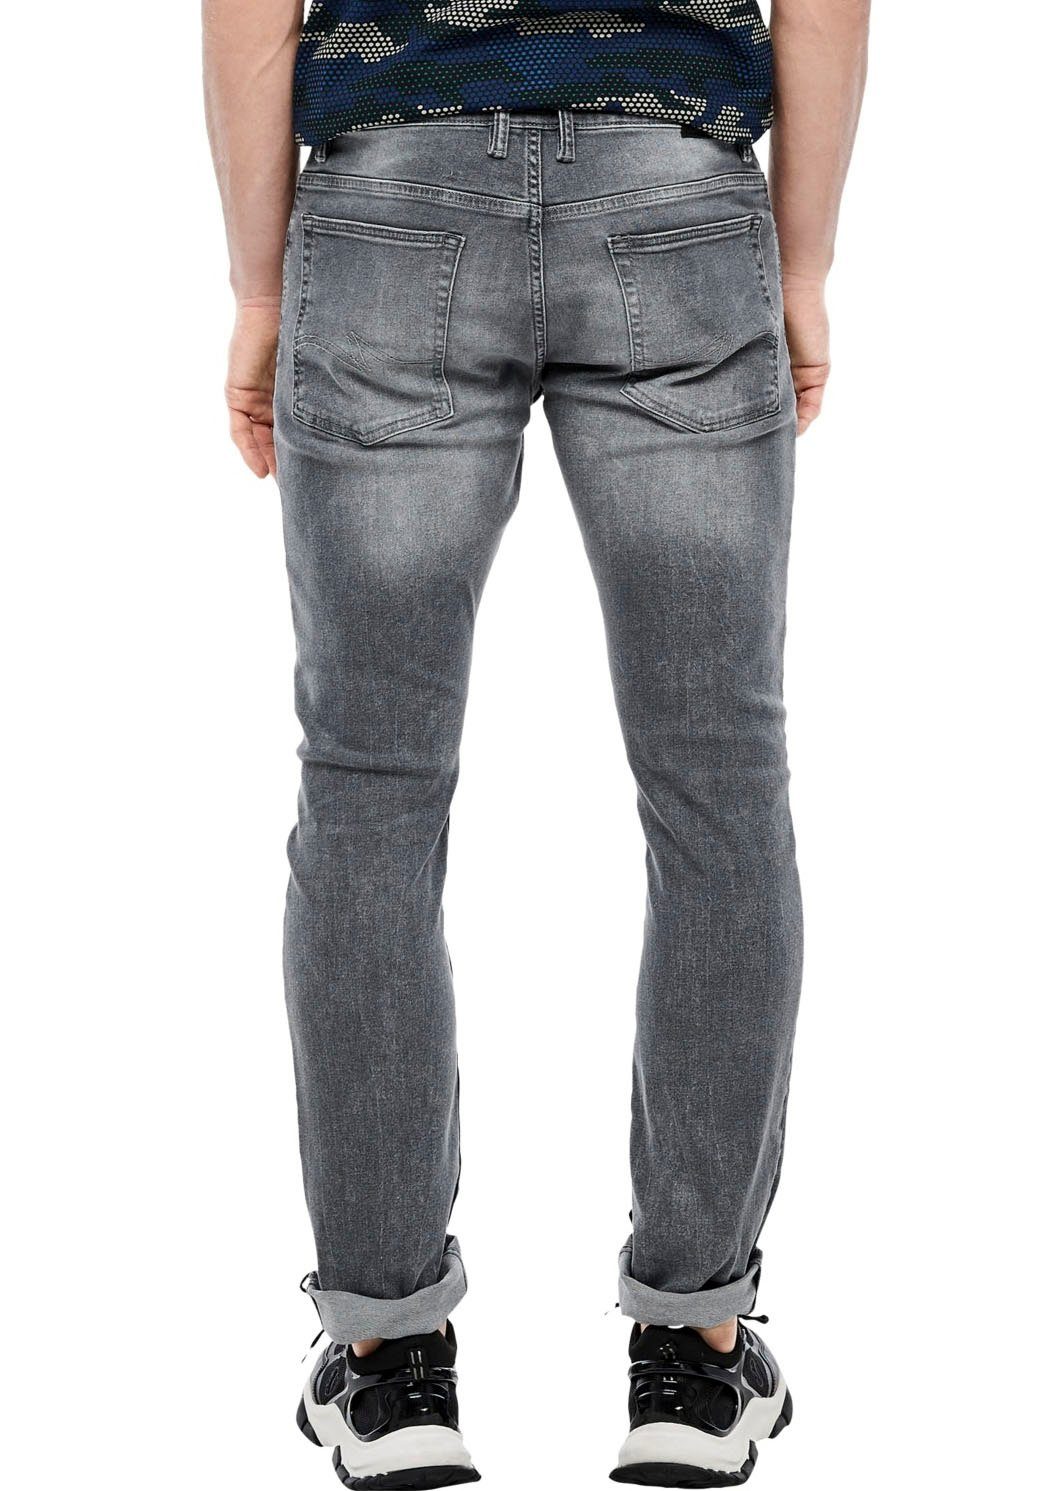 mit leichten QS grau Abriebeffekten 5-Pocket-Jeans